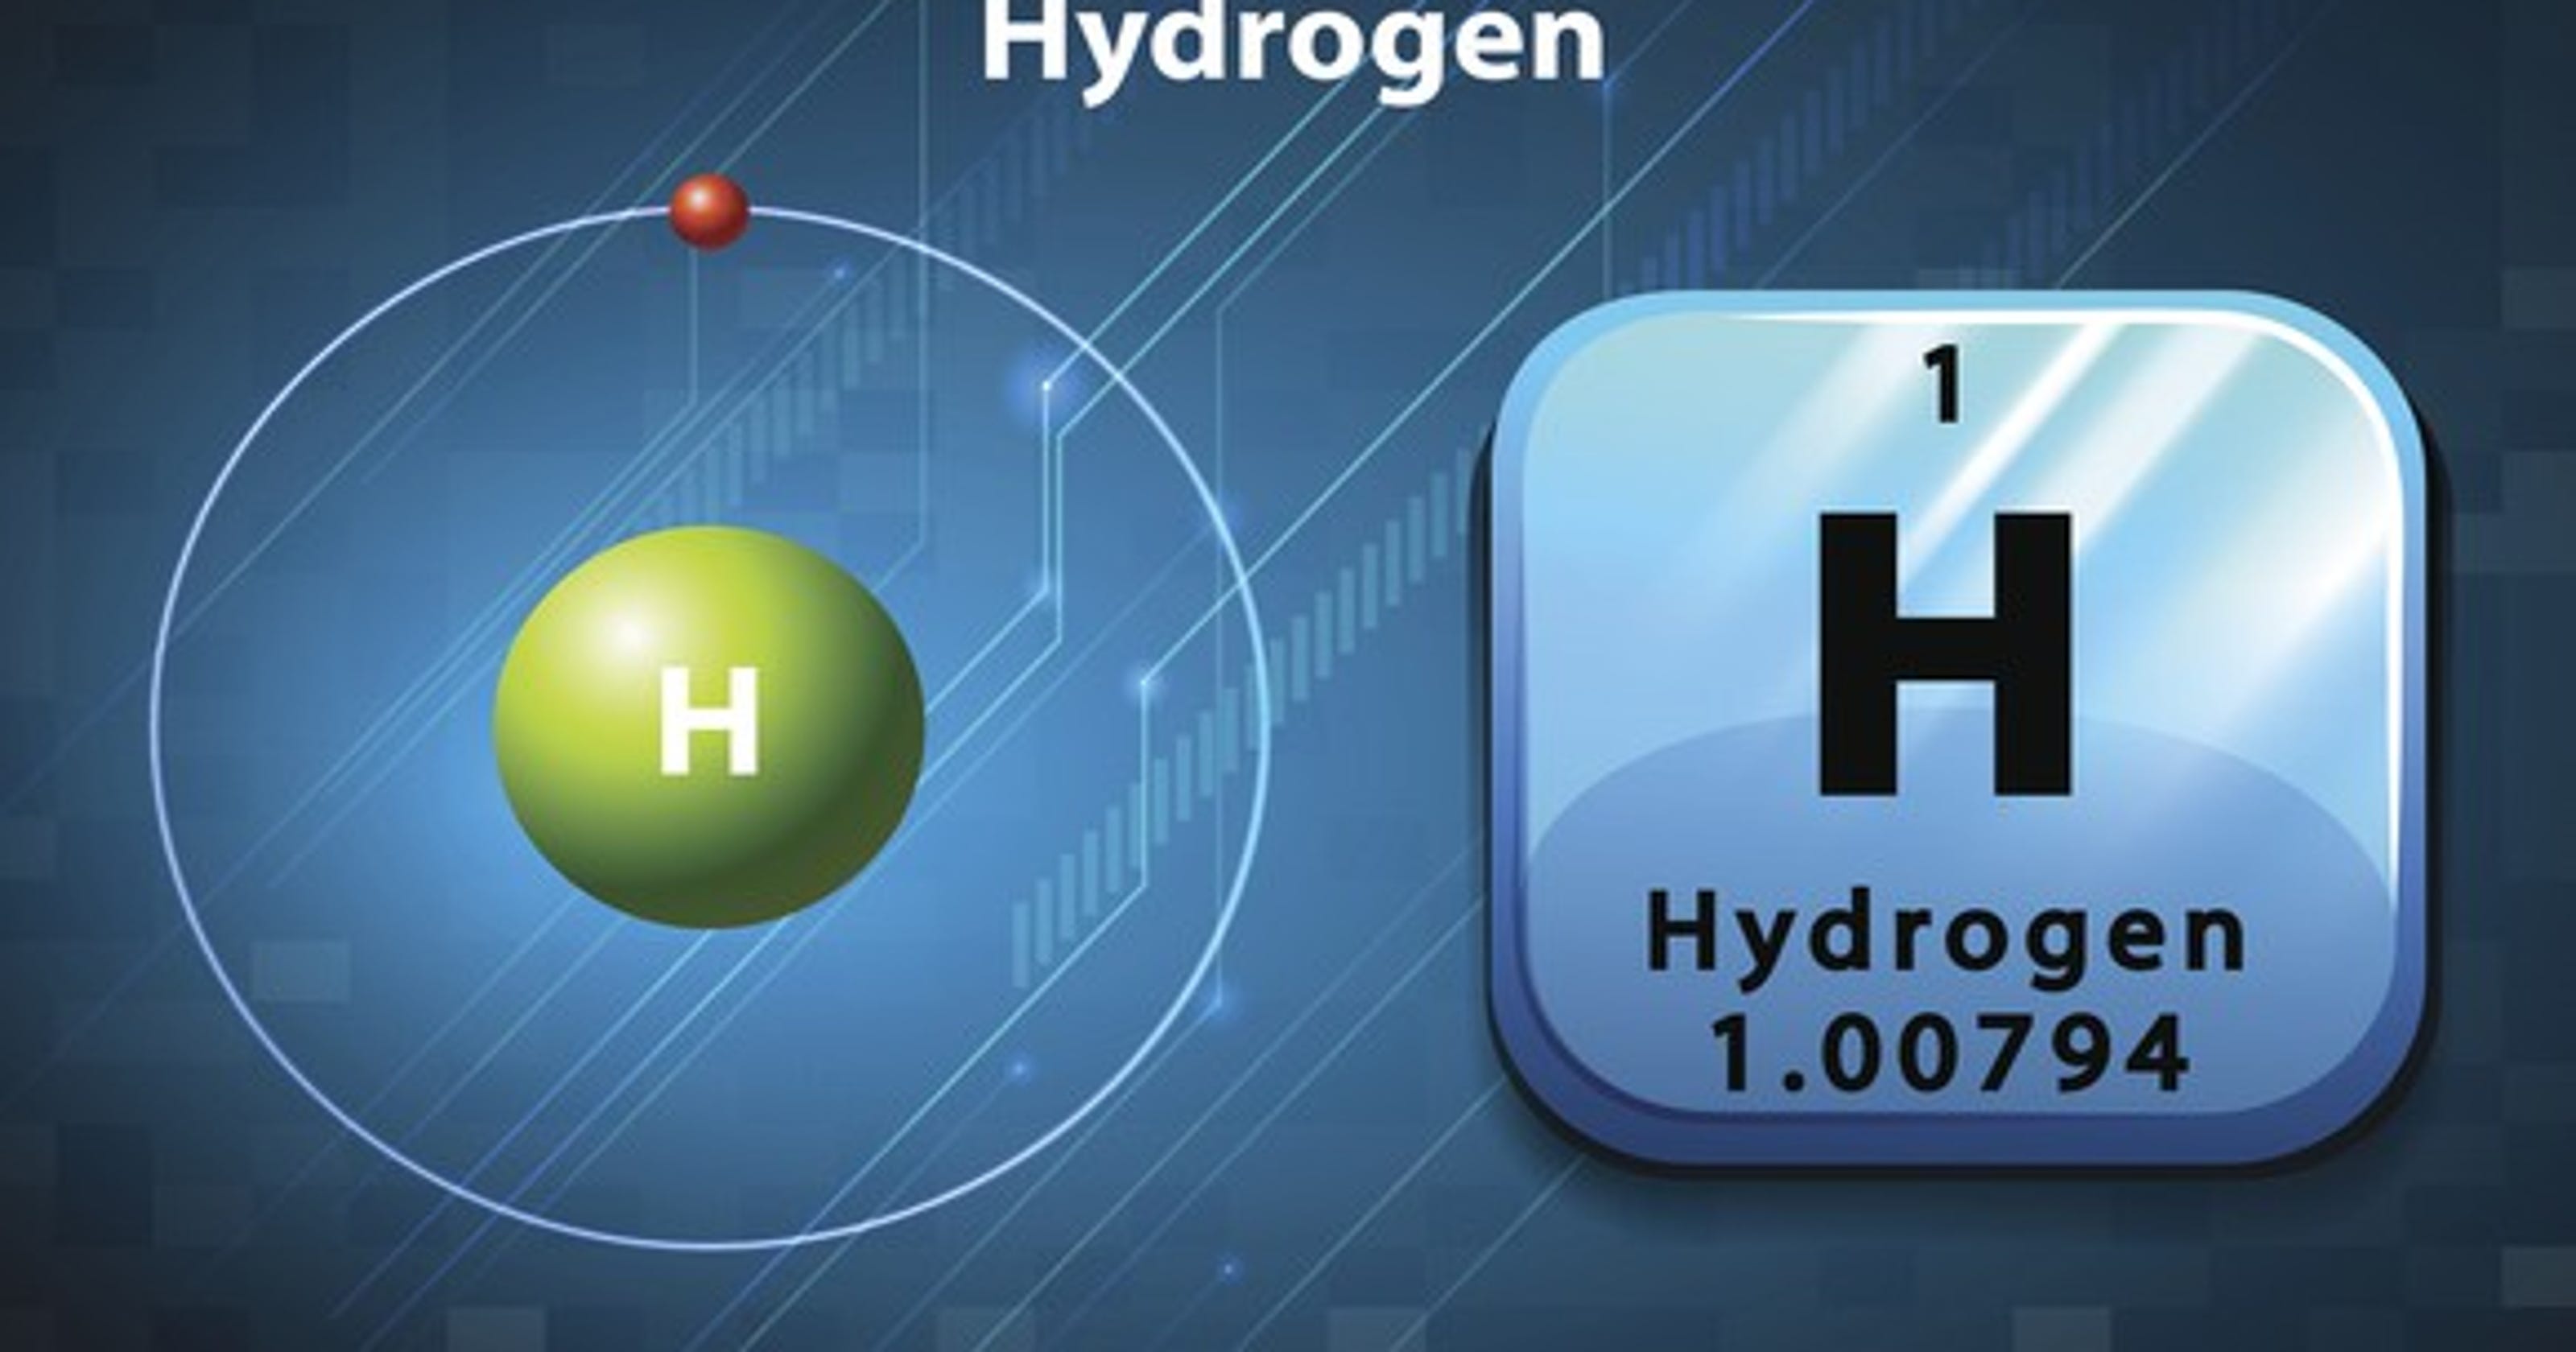 ut-ornl-hydrogen-fuel-cell-research-earns-3-5-million-doe-grant